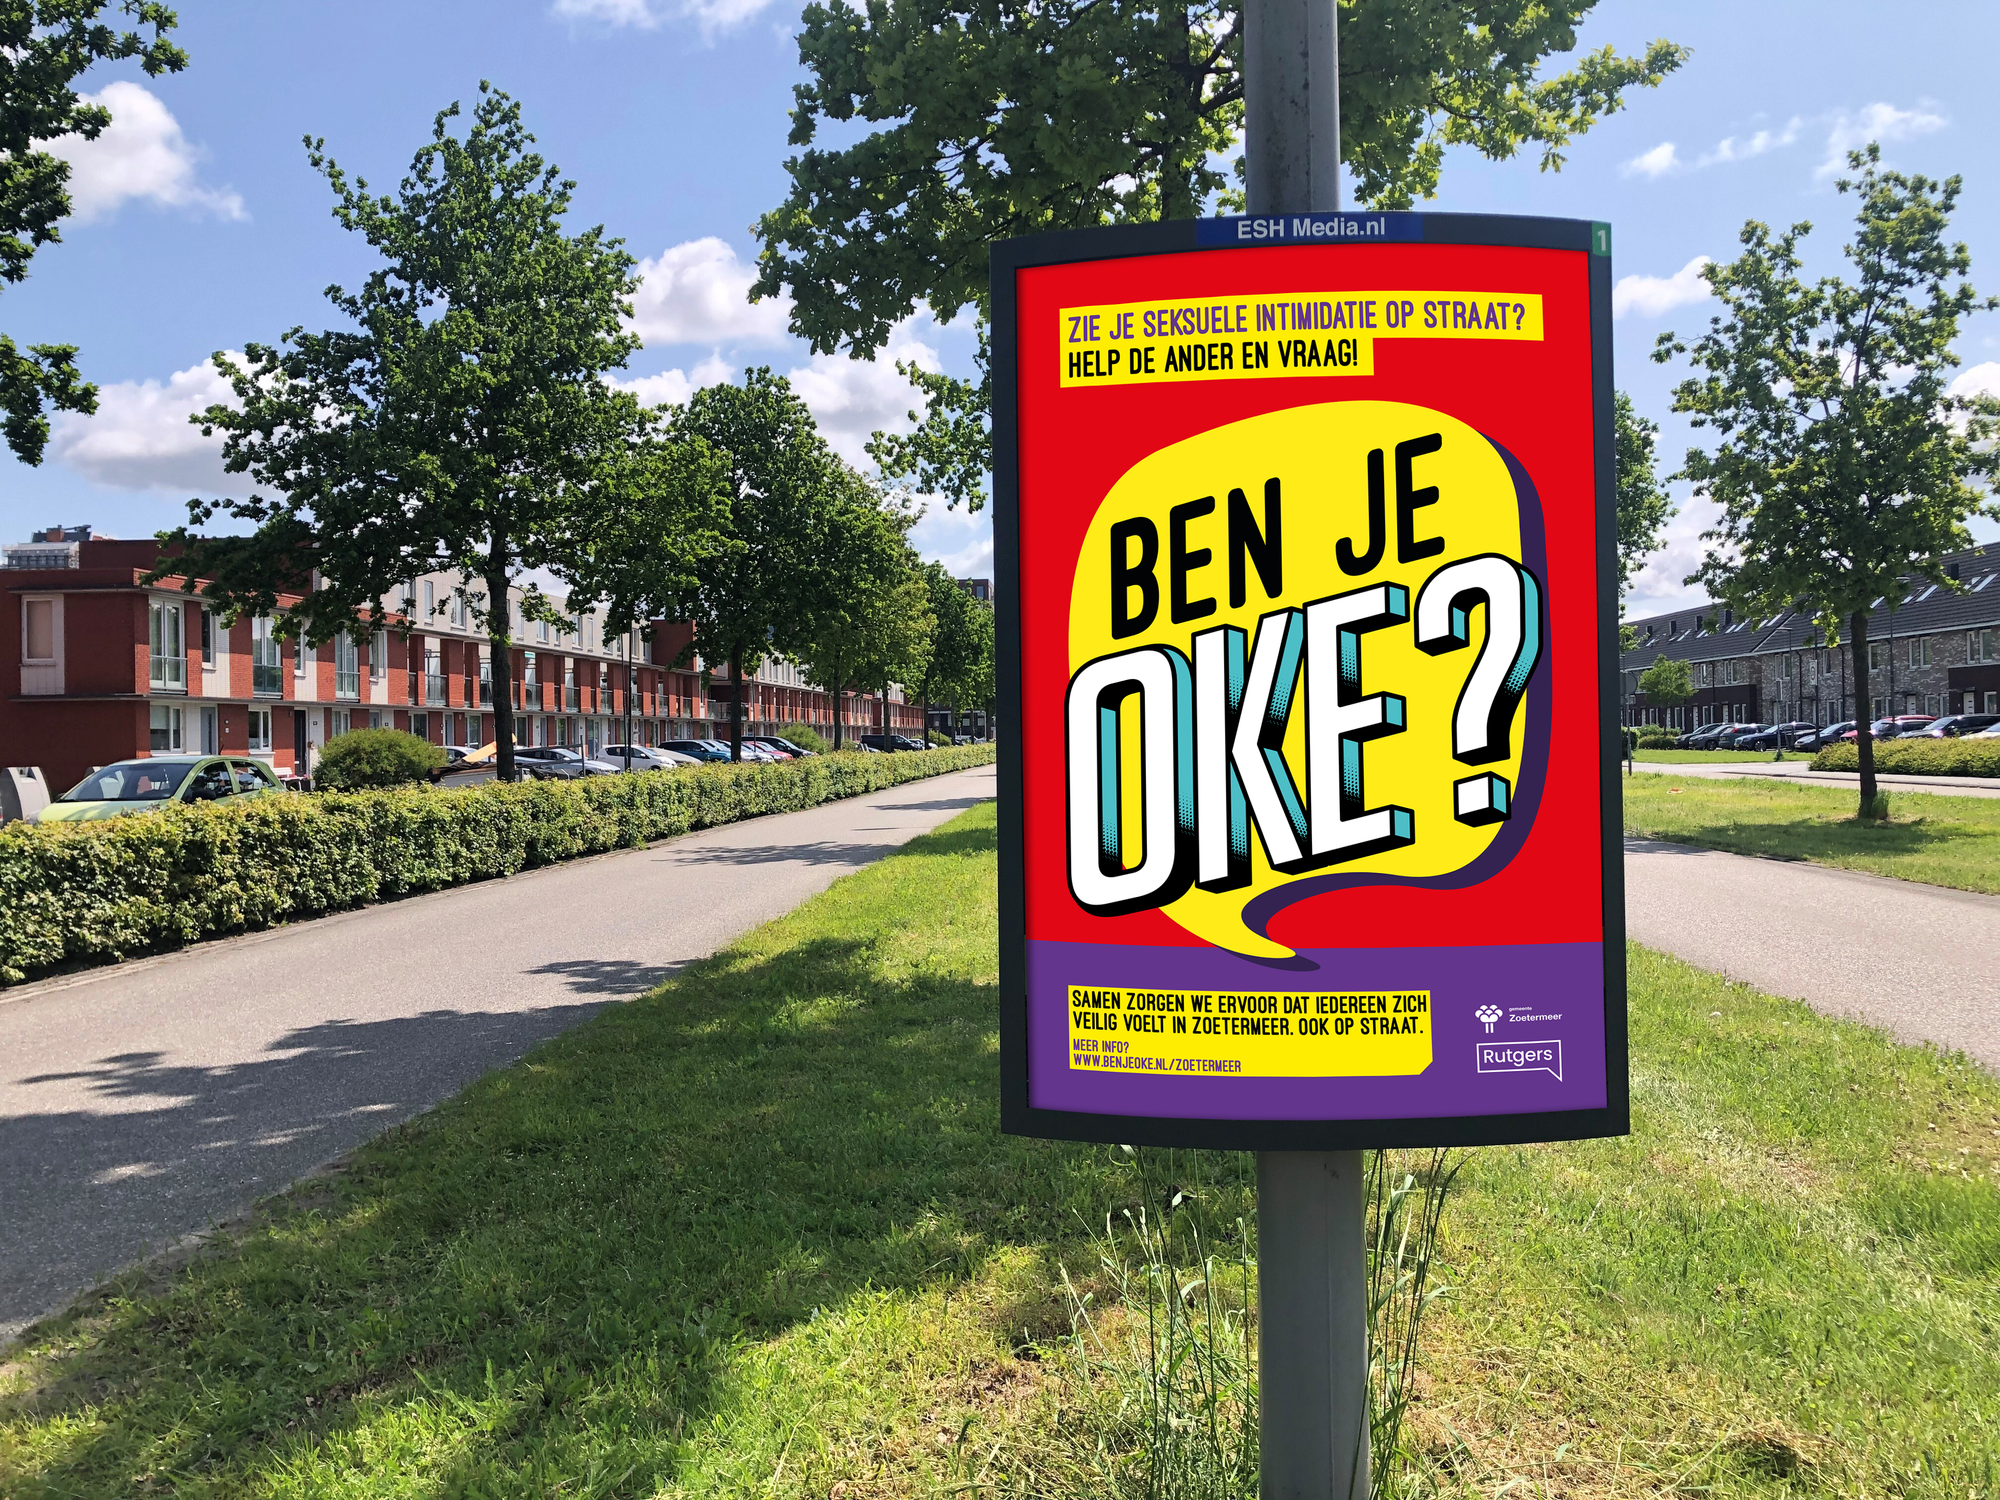 Zoetermeer start campagne tegen straatintimidatie: Ben je oké?